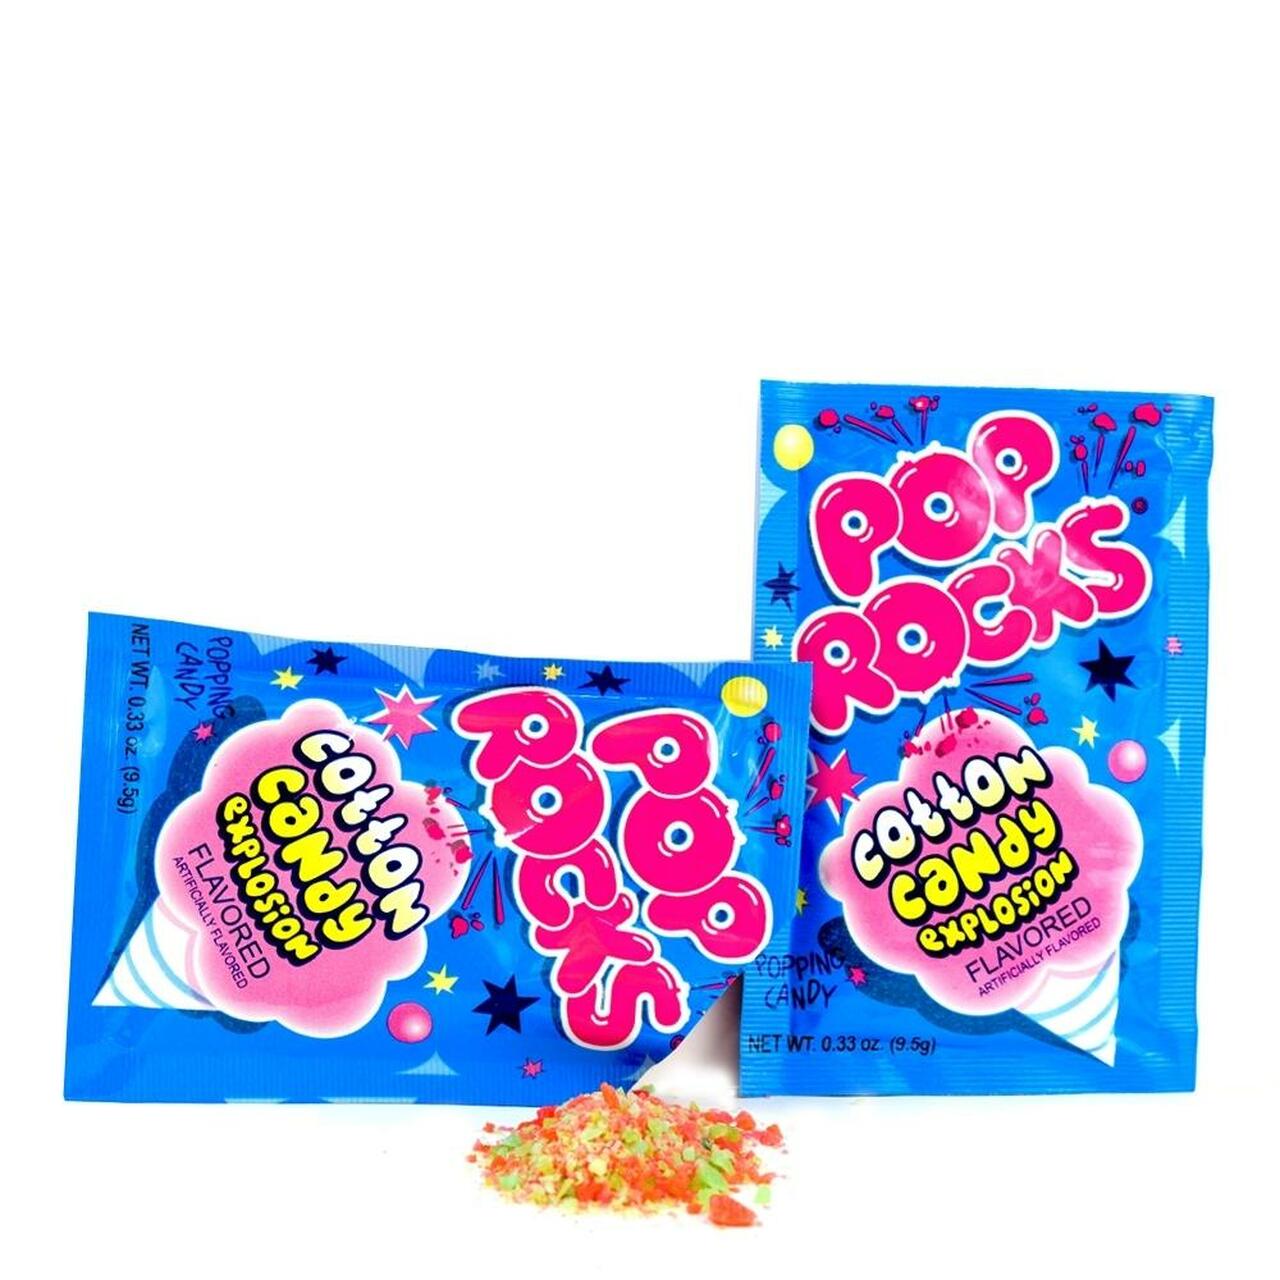 Pop Rocks Cotton Candy 0.33Oz